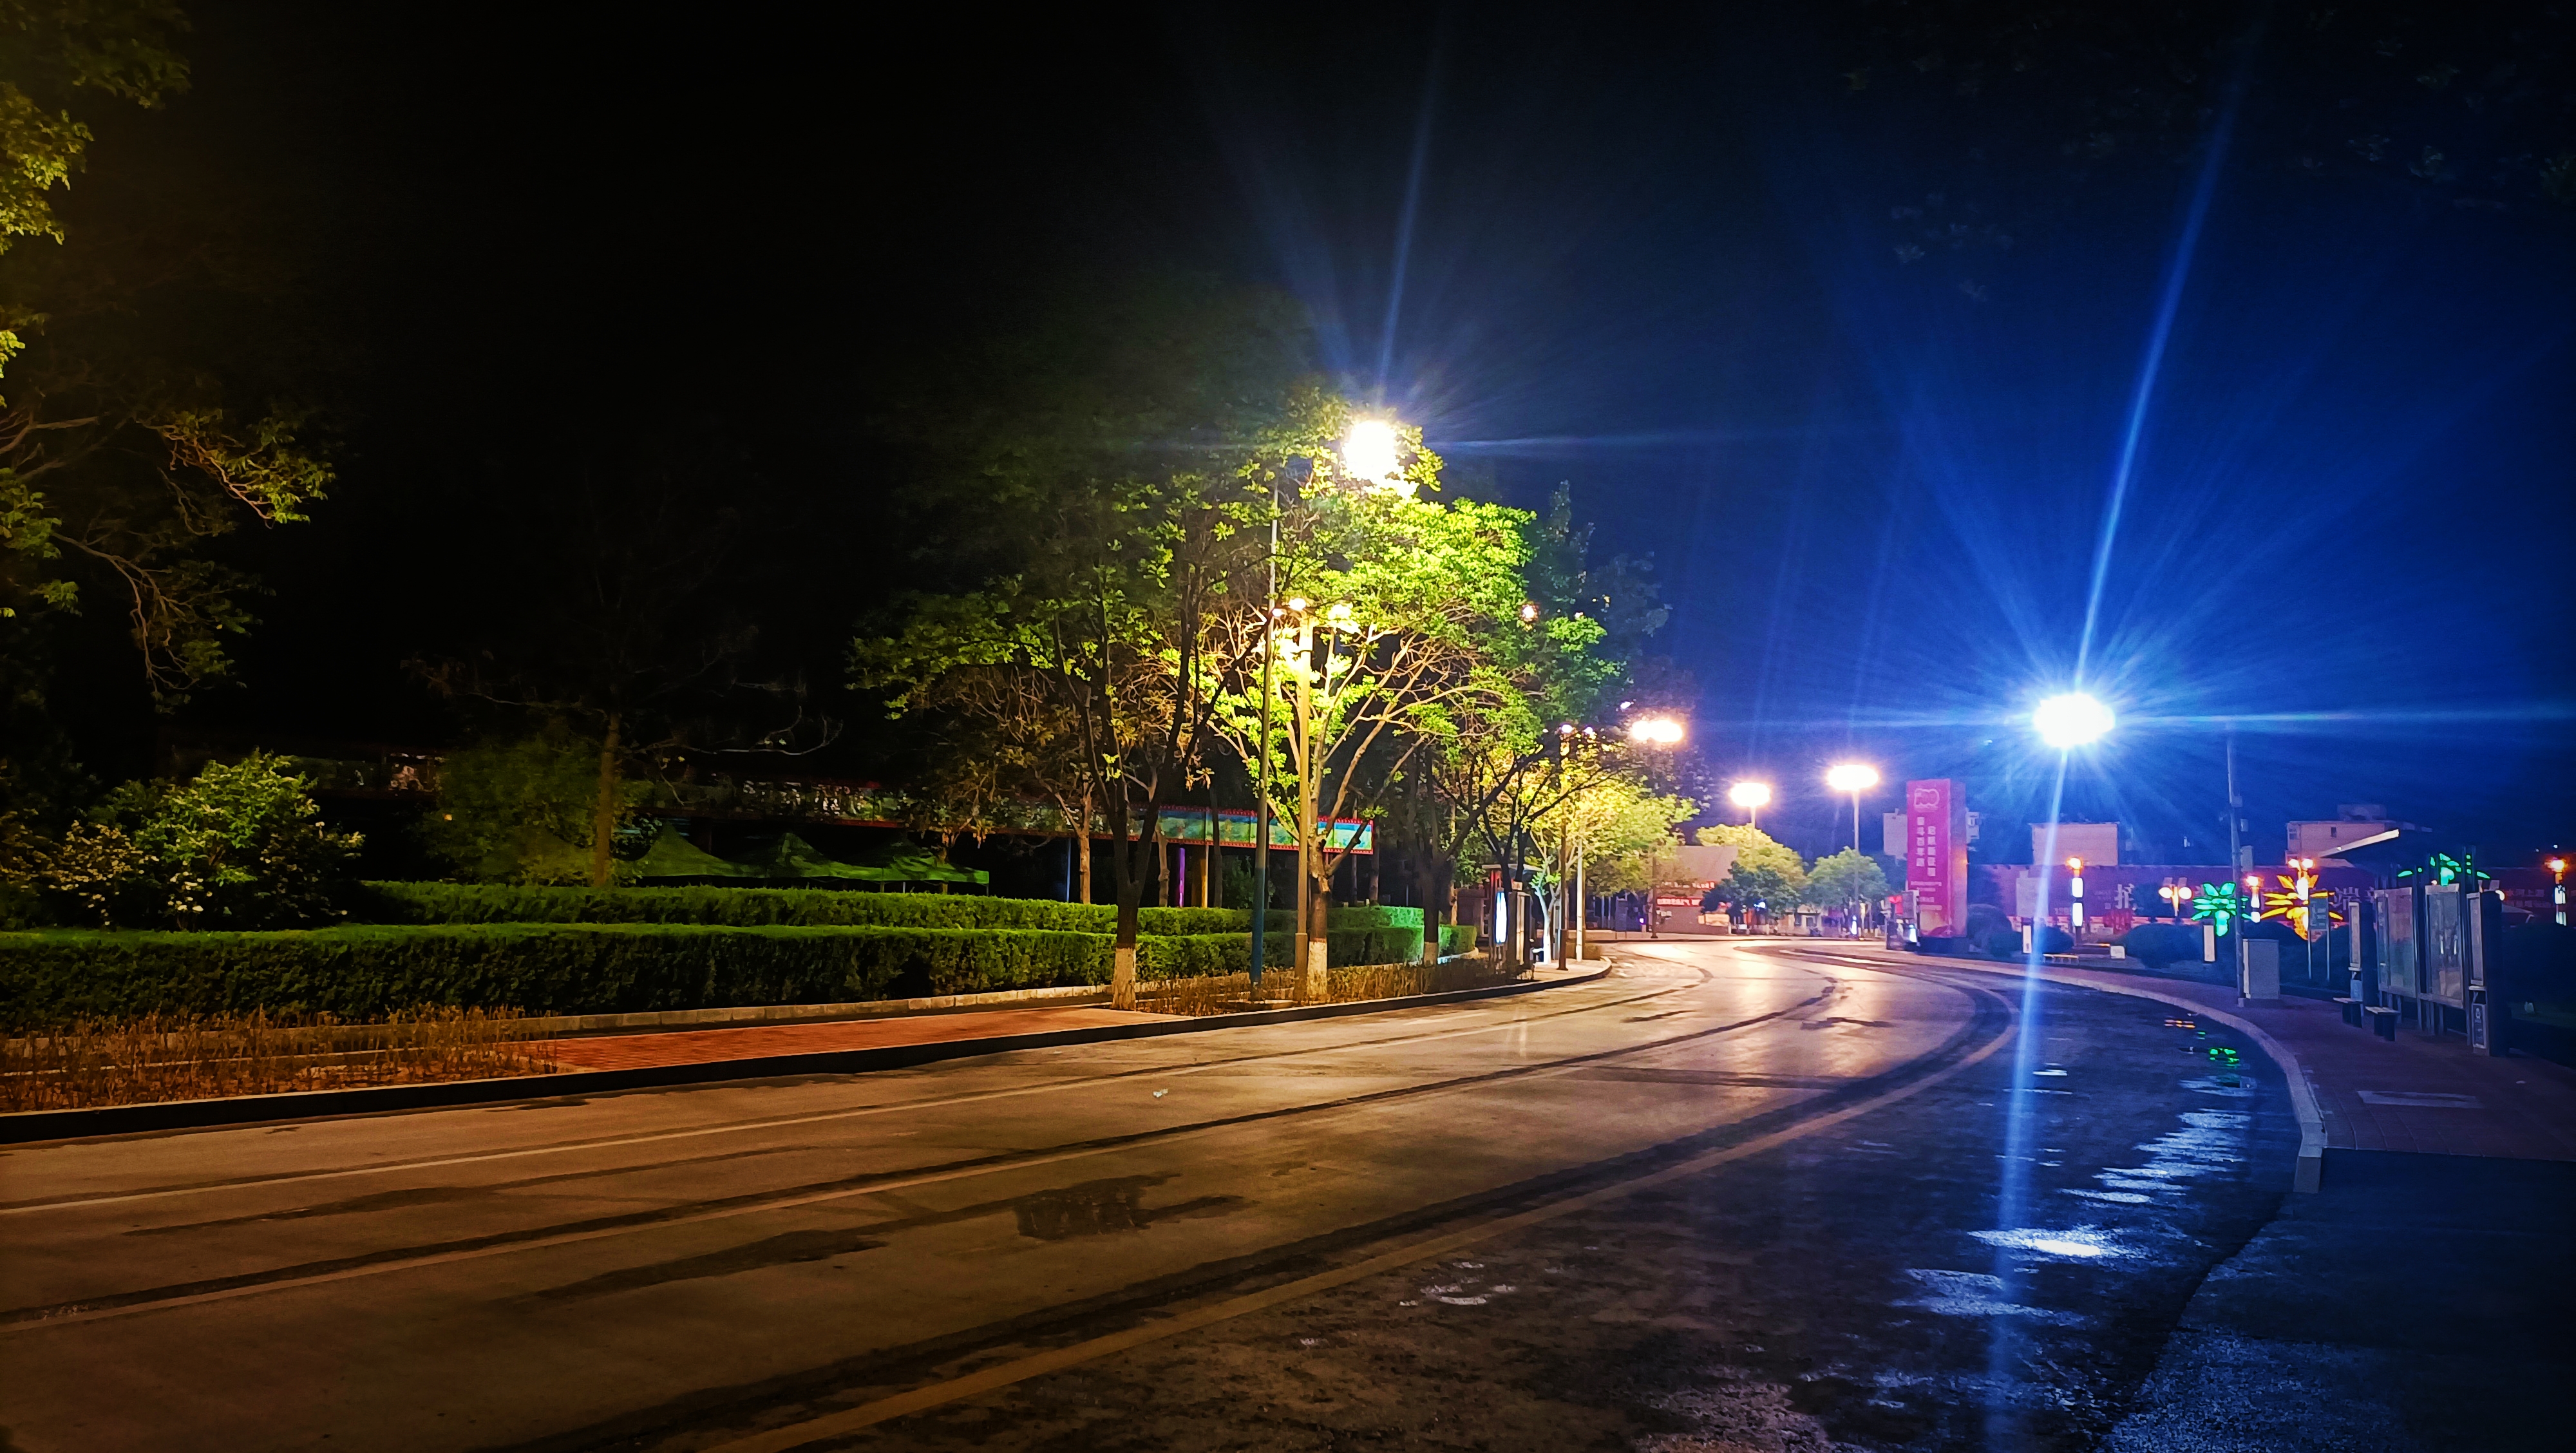 街景图片马路深夜晚上图片